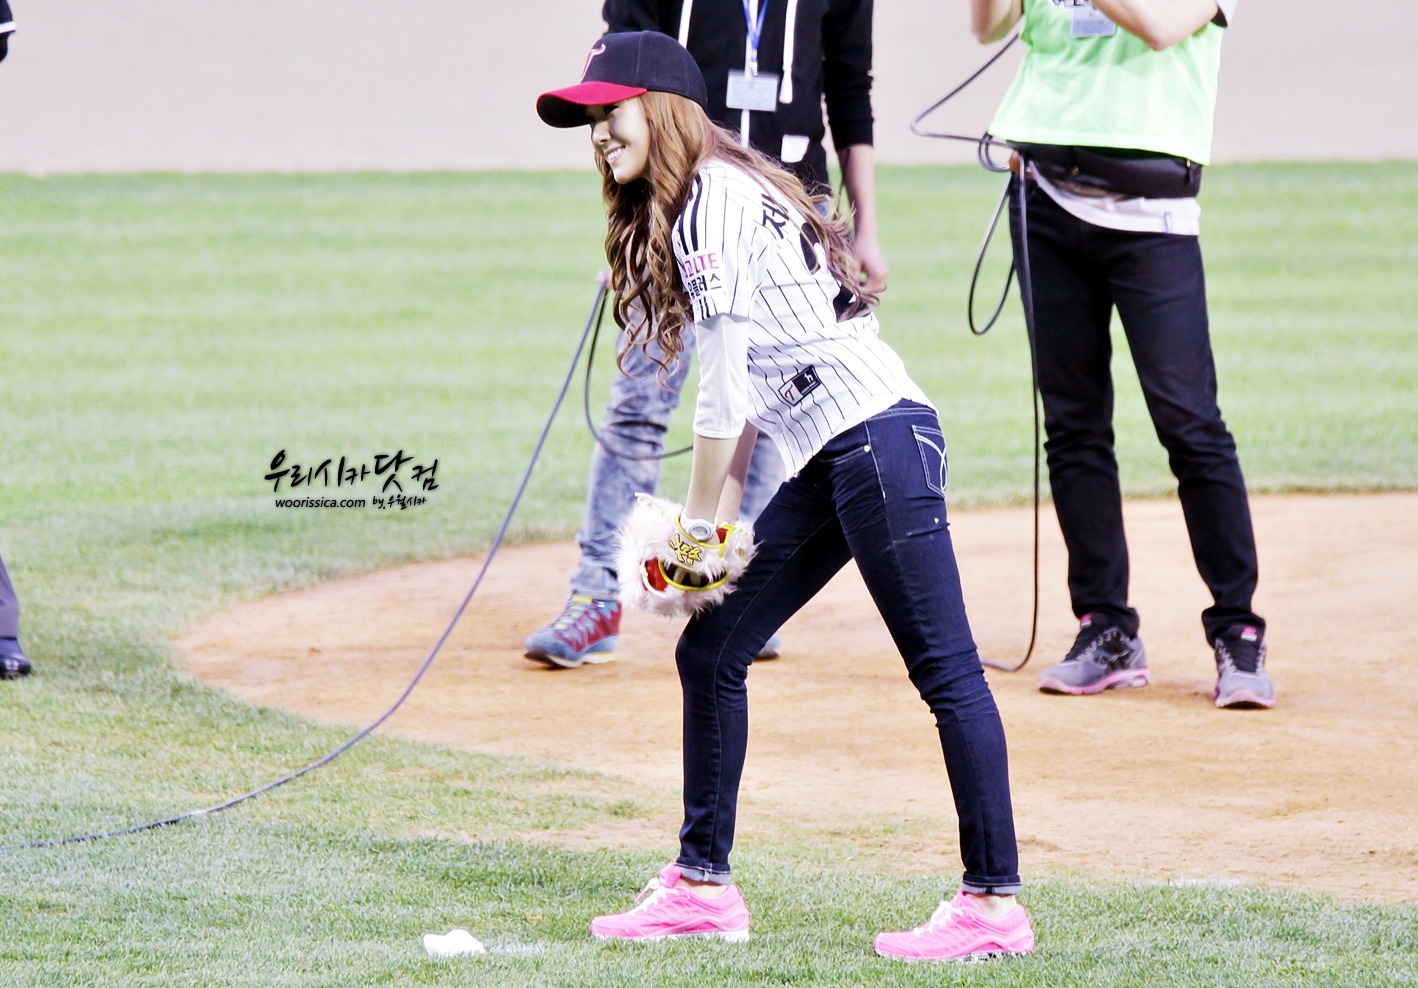 [PIC][11-05-2012]Jessica ném bóng mở màn cho trận đấu bóng chày giữa LG & Samsung chiều nay - Page 3 116E04494FAE63D41D6A40